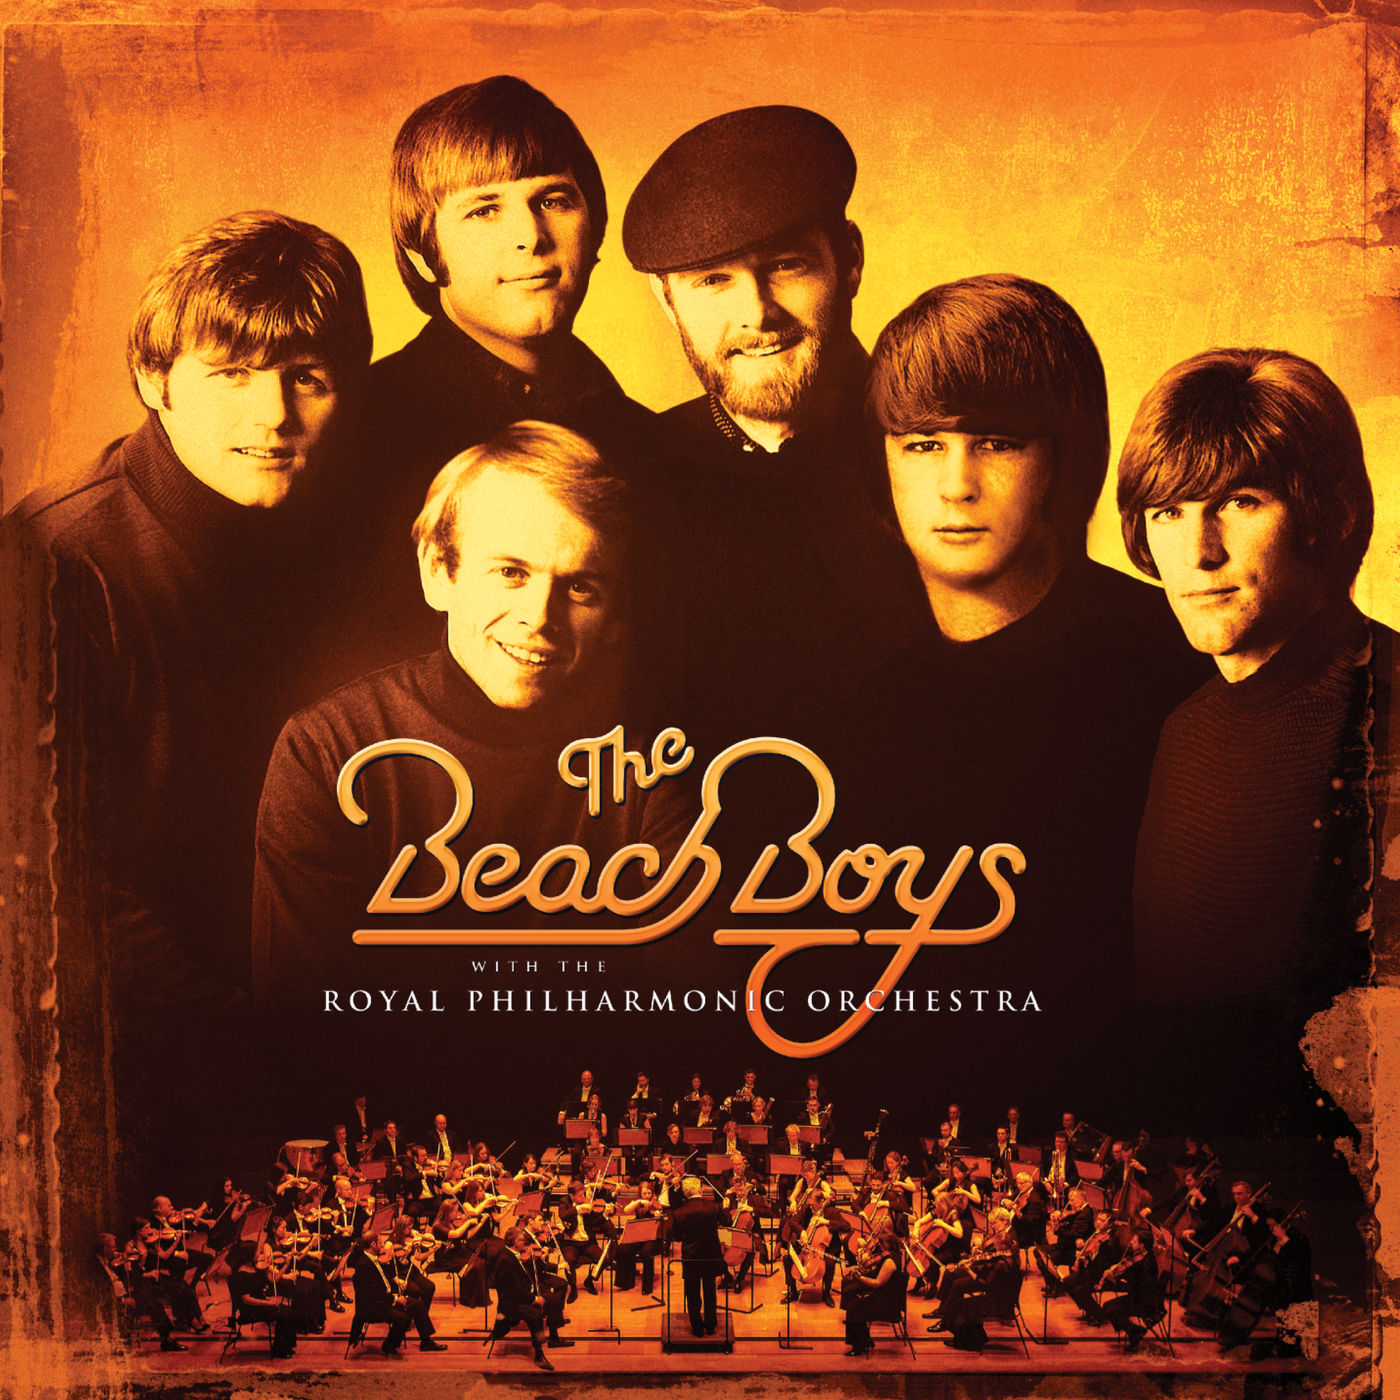 The Beach Boys – The Beach Boys With The Royal Philharmonic Orchestra【96kHz／24bit】意大利区-OppsUpro音乐帝国